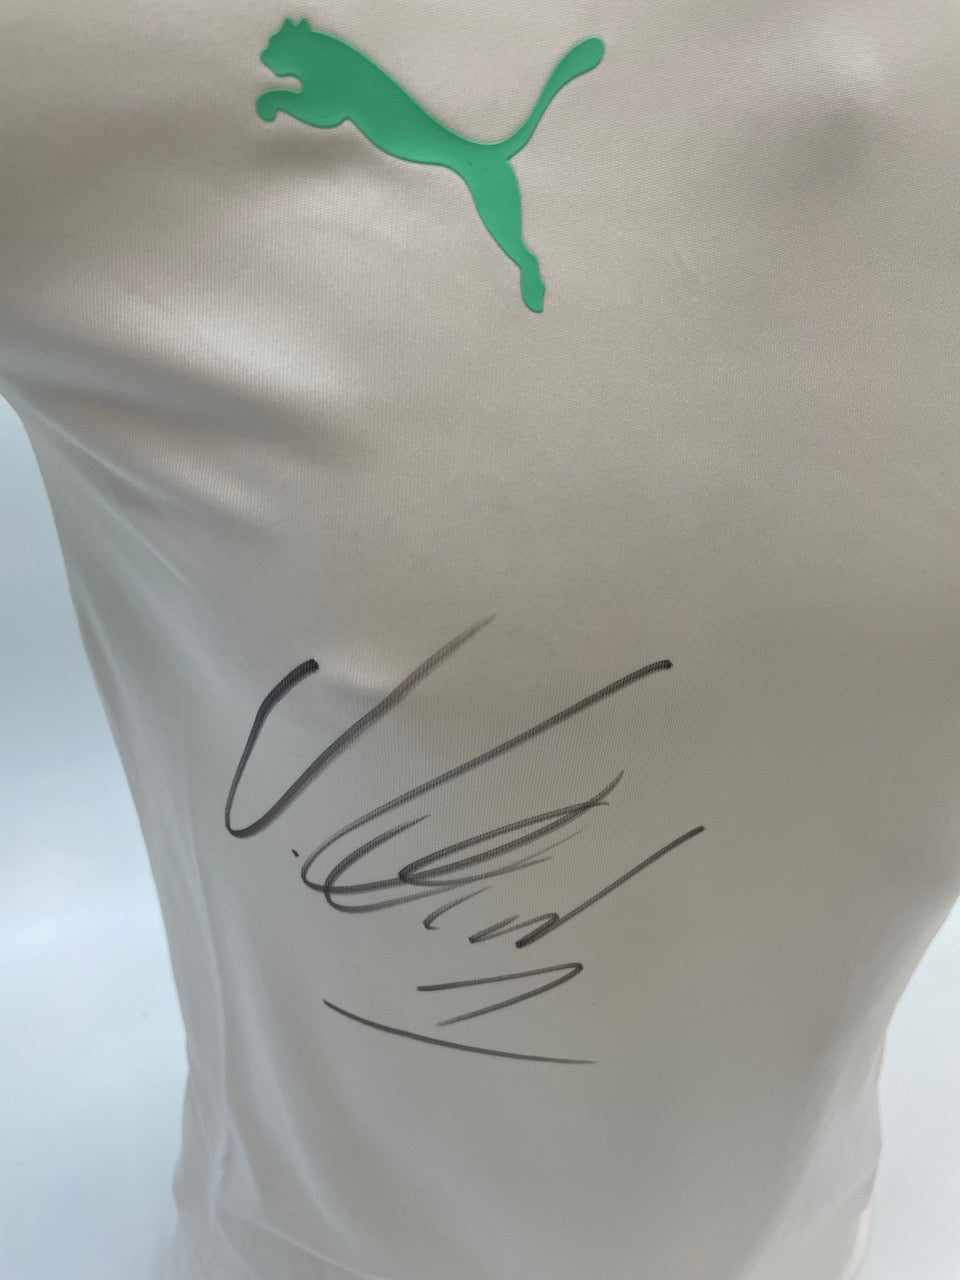 Schweiz Trainingsshirt Jonas Omlin signiert Puma COA Autogramm handsigned Neu L